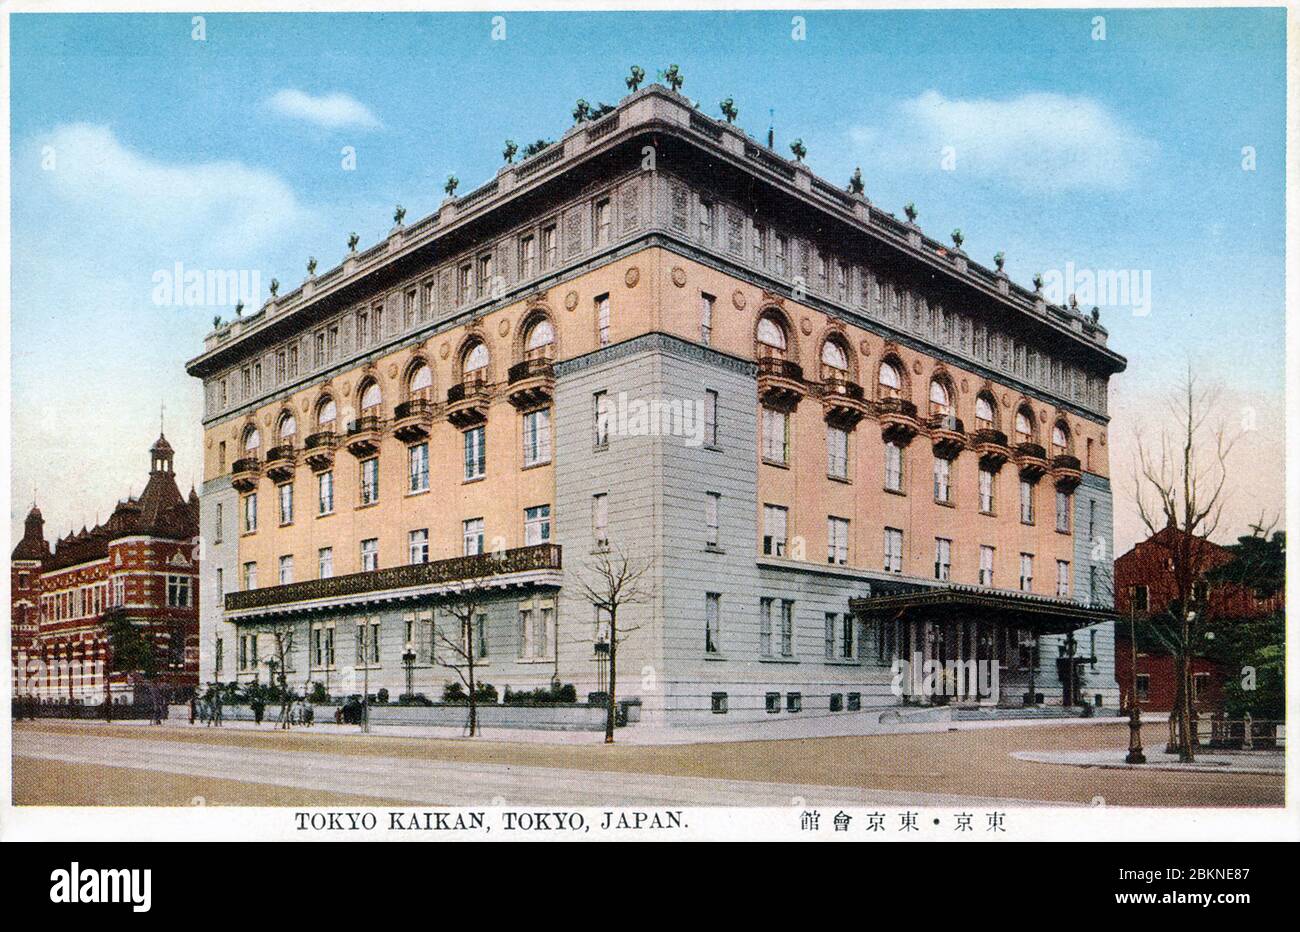 [ Japan der 1920er Jahre - Tokyo Kaikan ] - Tokyo Kaikan (東京會館) in Tokio. Die Firma wurde 1920 gegründet (Taisho 9); das Gebäude auf diesem Bild wurde von Junkichi Watanabe (田辺淳吉, 1879-1926) entworfen und 1922 fertiggestellt (Taisho 11). Vintage-Postkarte des 20. Jahrhunderts. Stockfoto